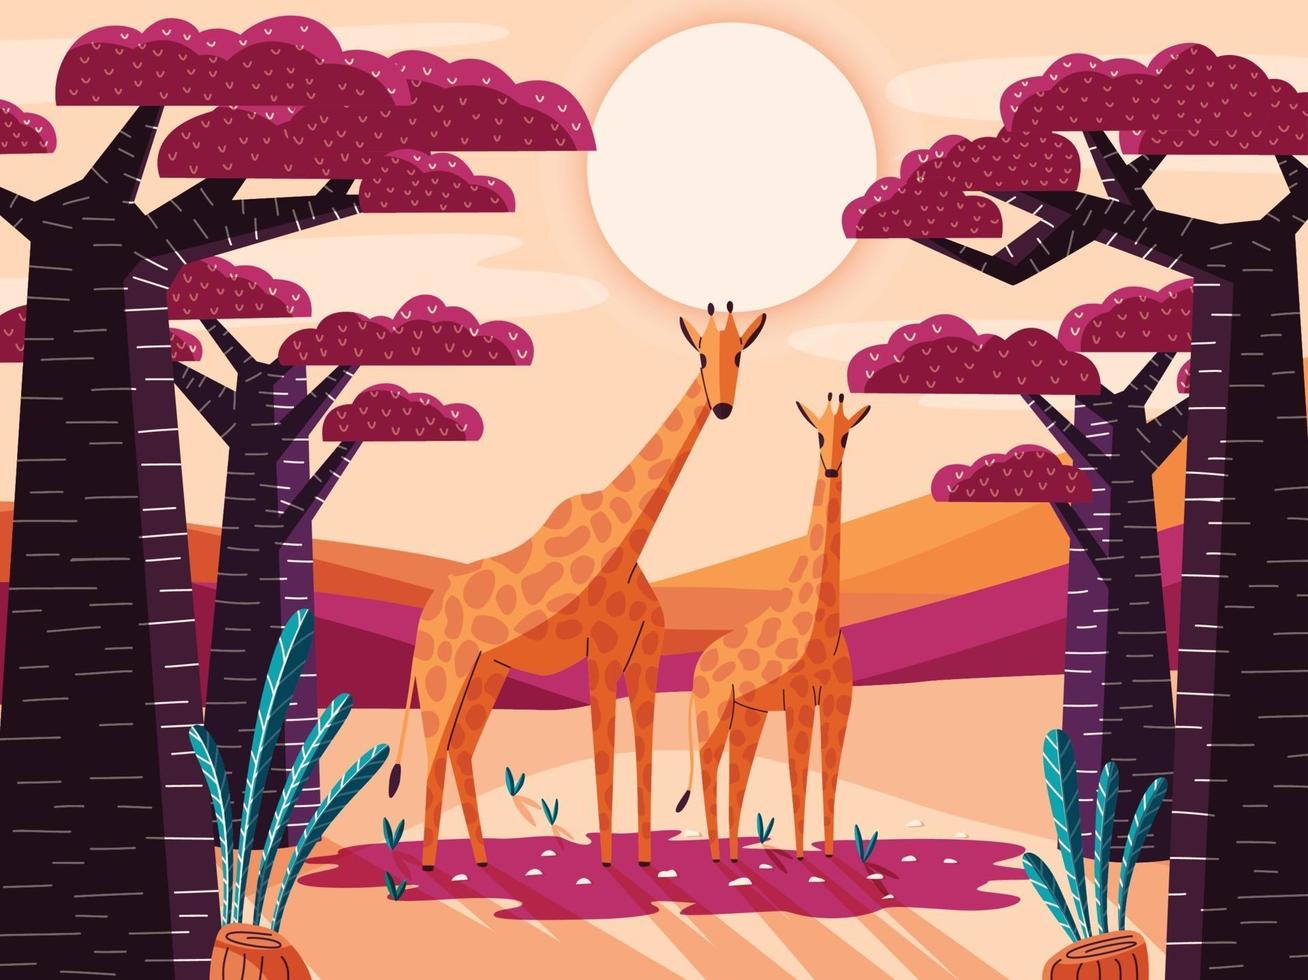 bellissimo paesaggio naturale della savana con giraffe e alberi di baobab. illustrazione colorata panoramica con animali selvatici. scenario esotico della natura africana. vettore